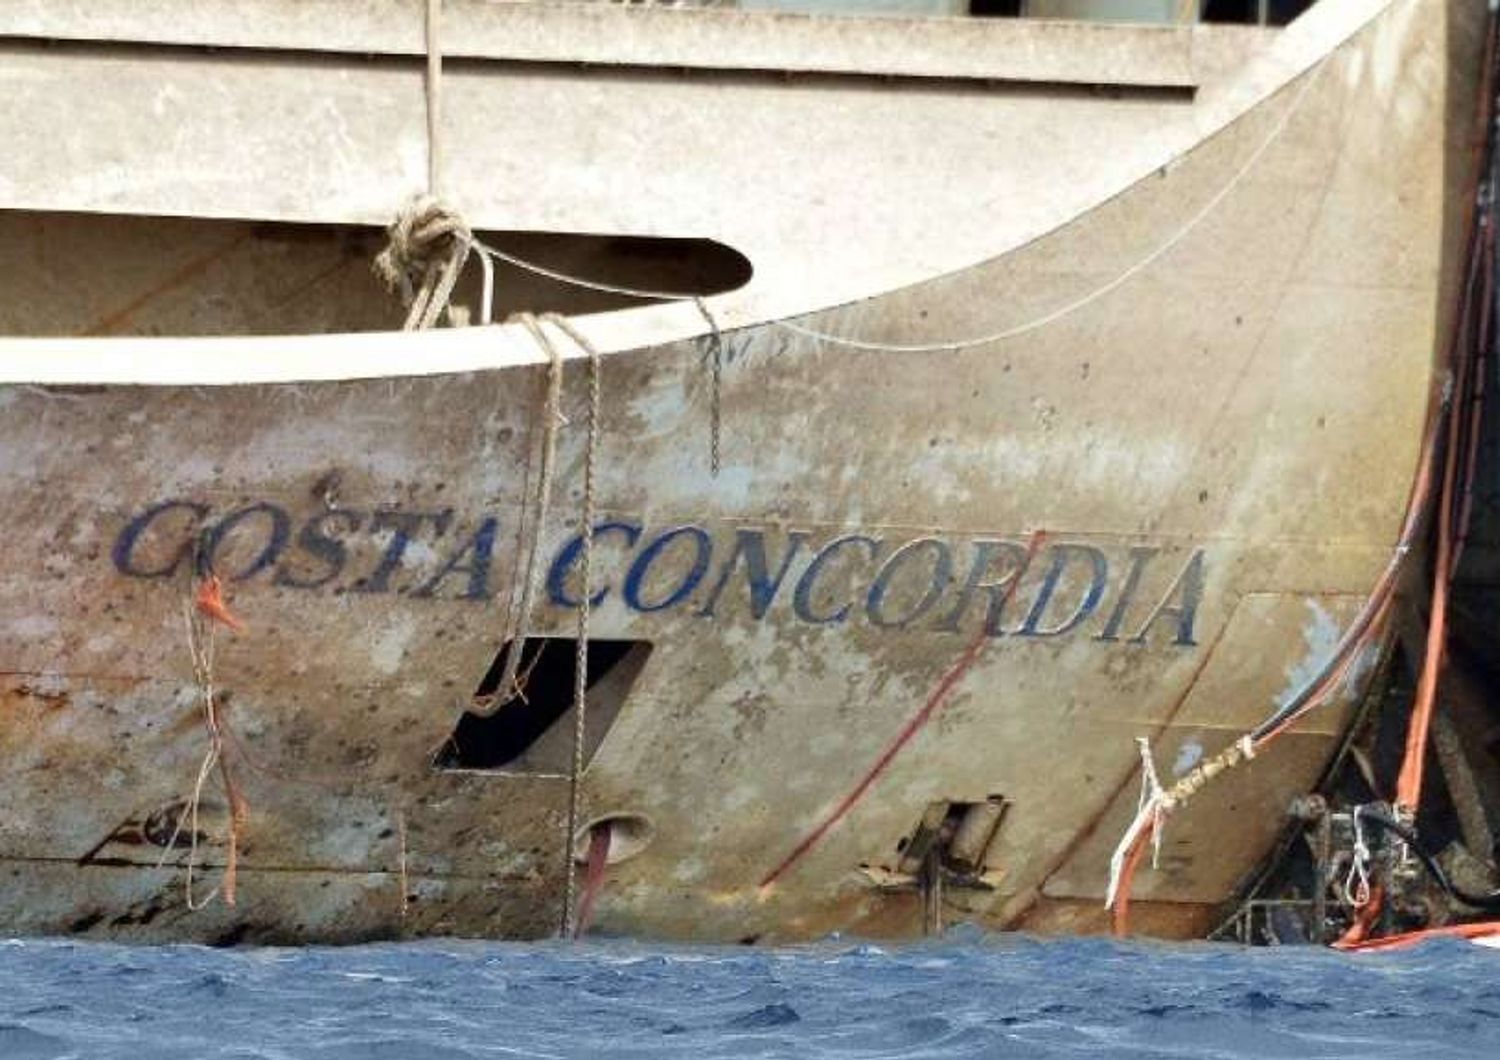 Il maltempo ferma la Concordia, la partenza slitta a mercoledi'